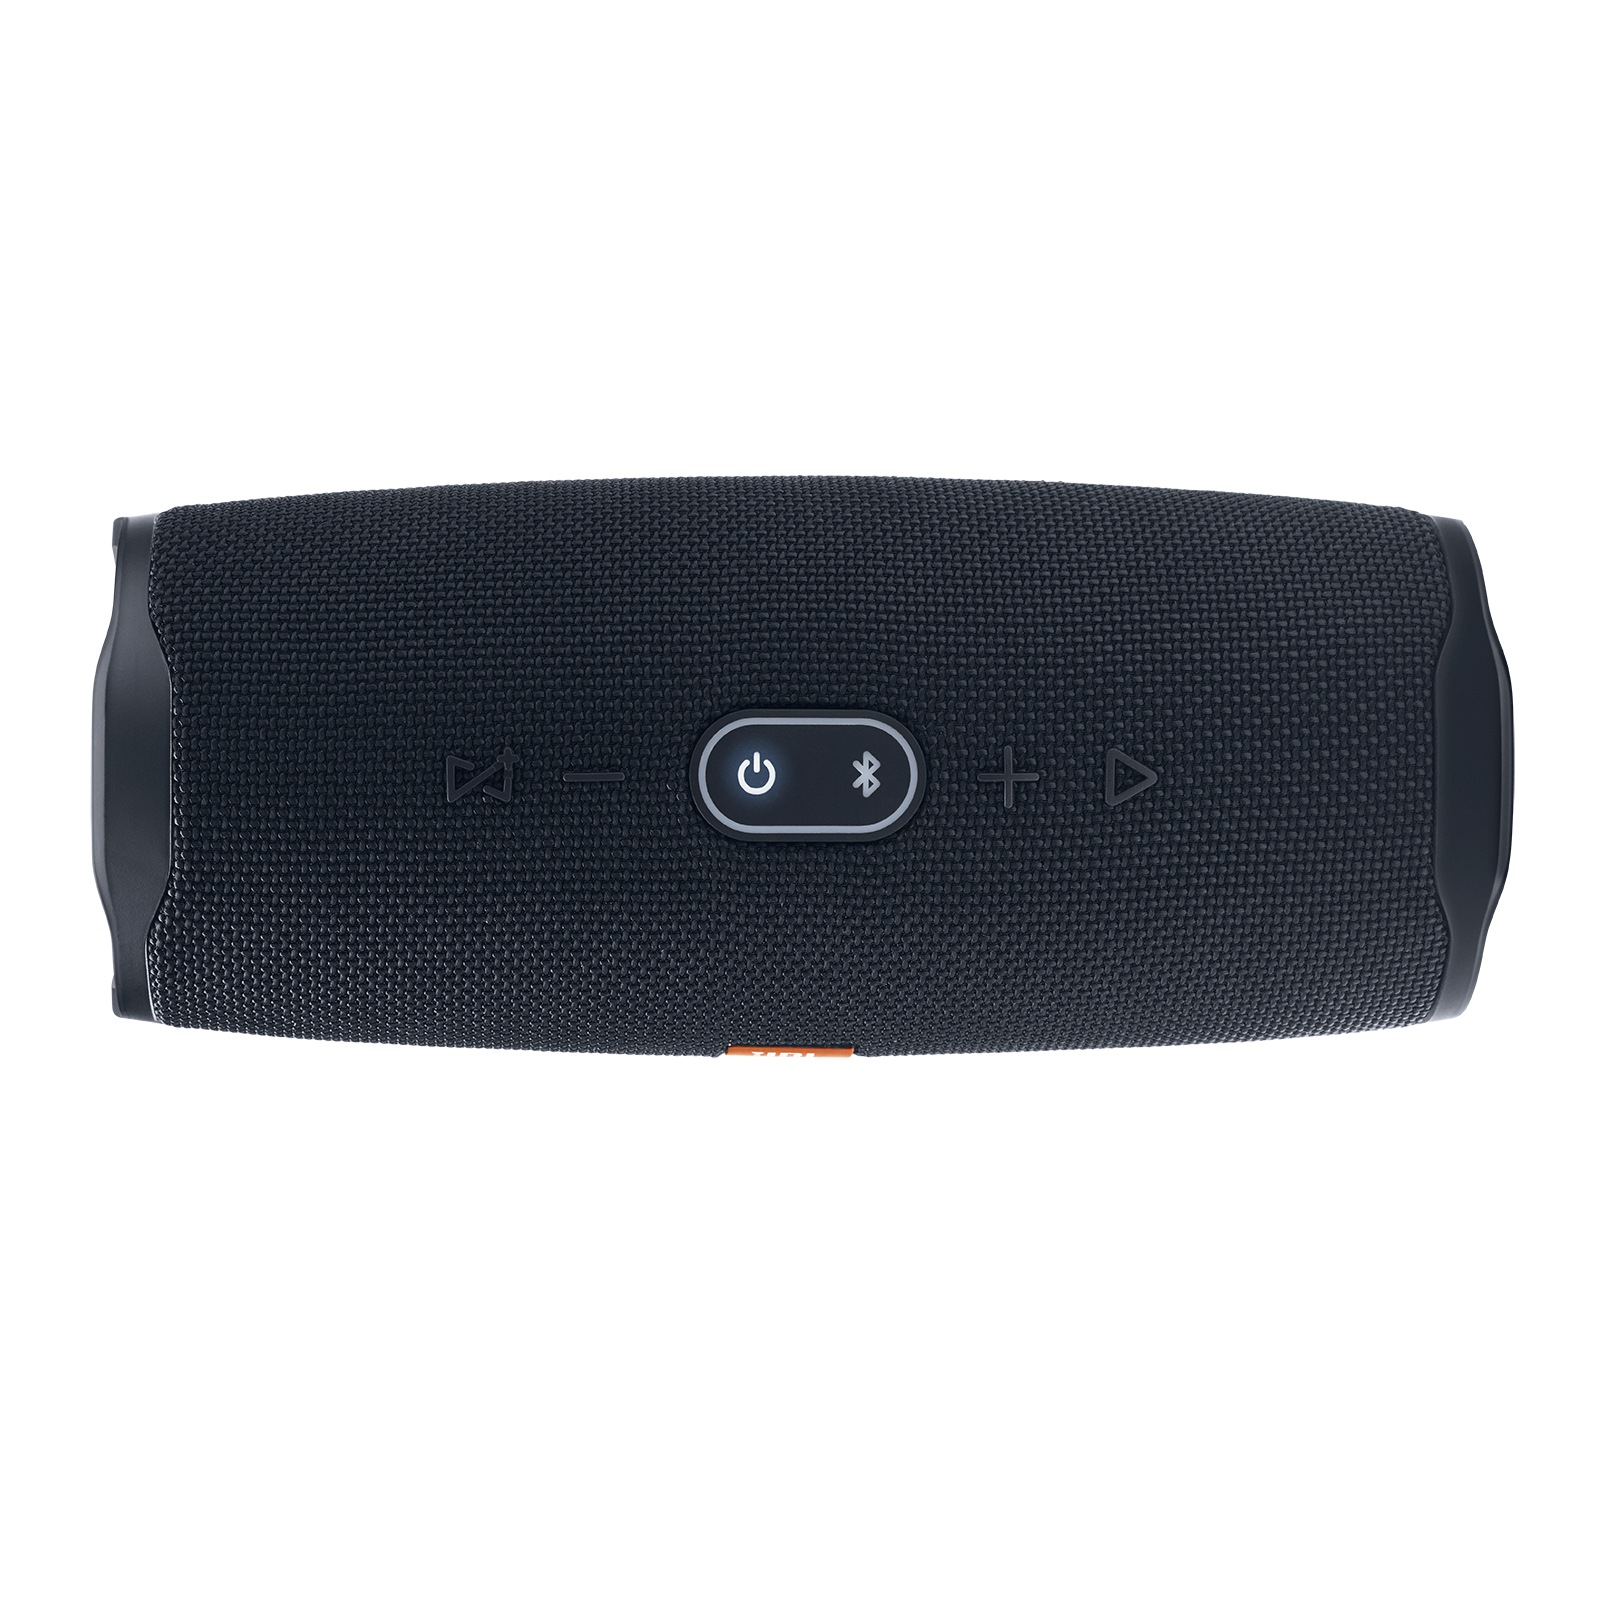 JBL Charge 4 - Black - Portable Bluetooth speaker - Detailshot 1